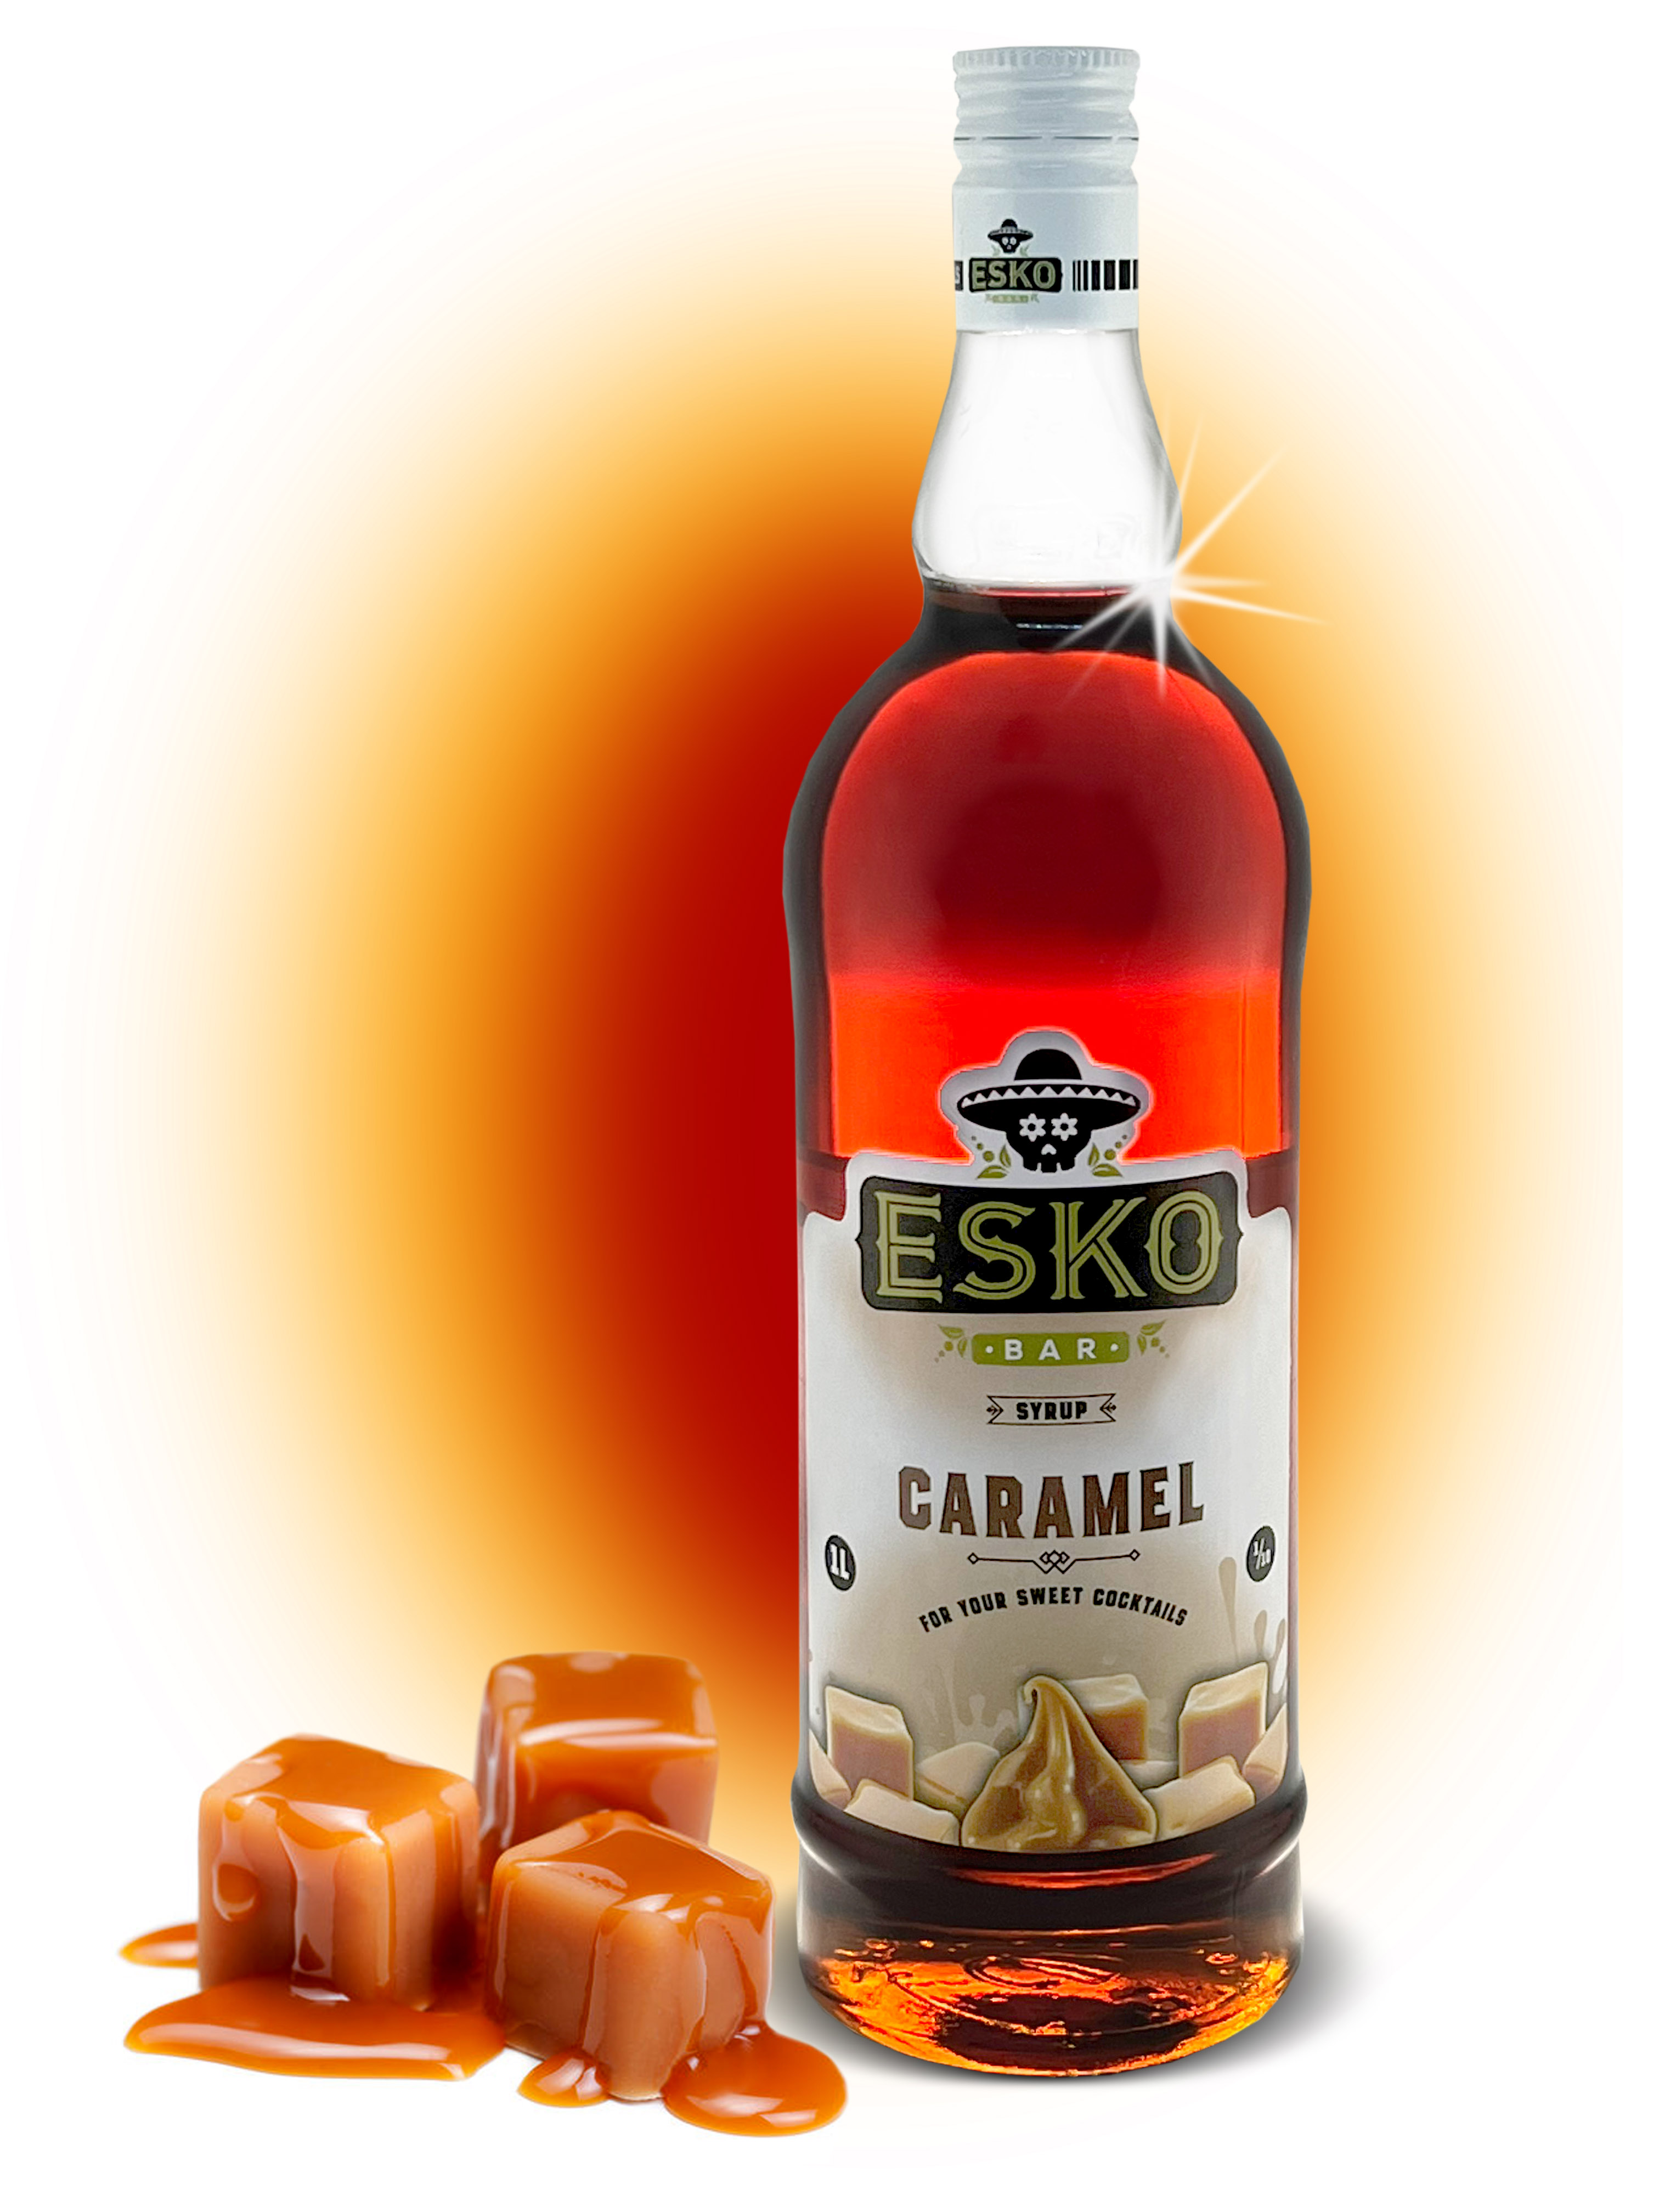 Сироп Esko Bar Caramel (1L) изображение 1